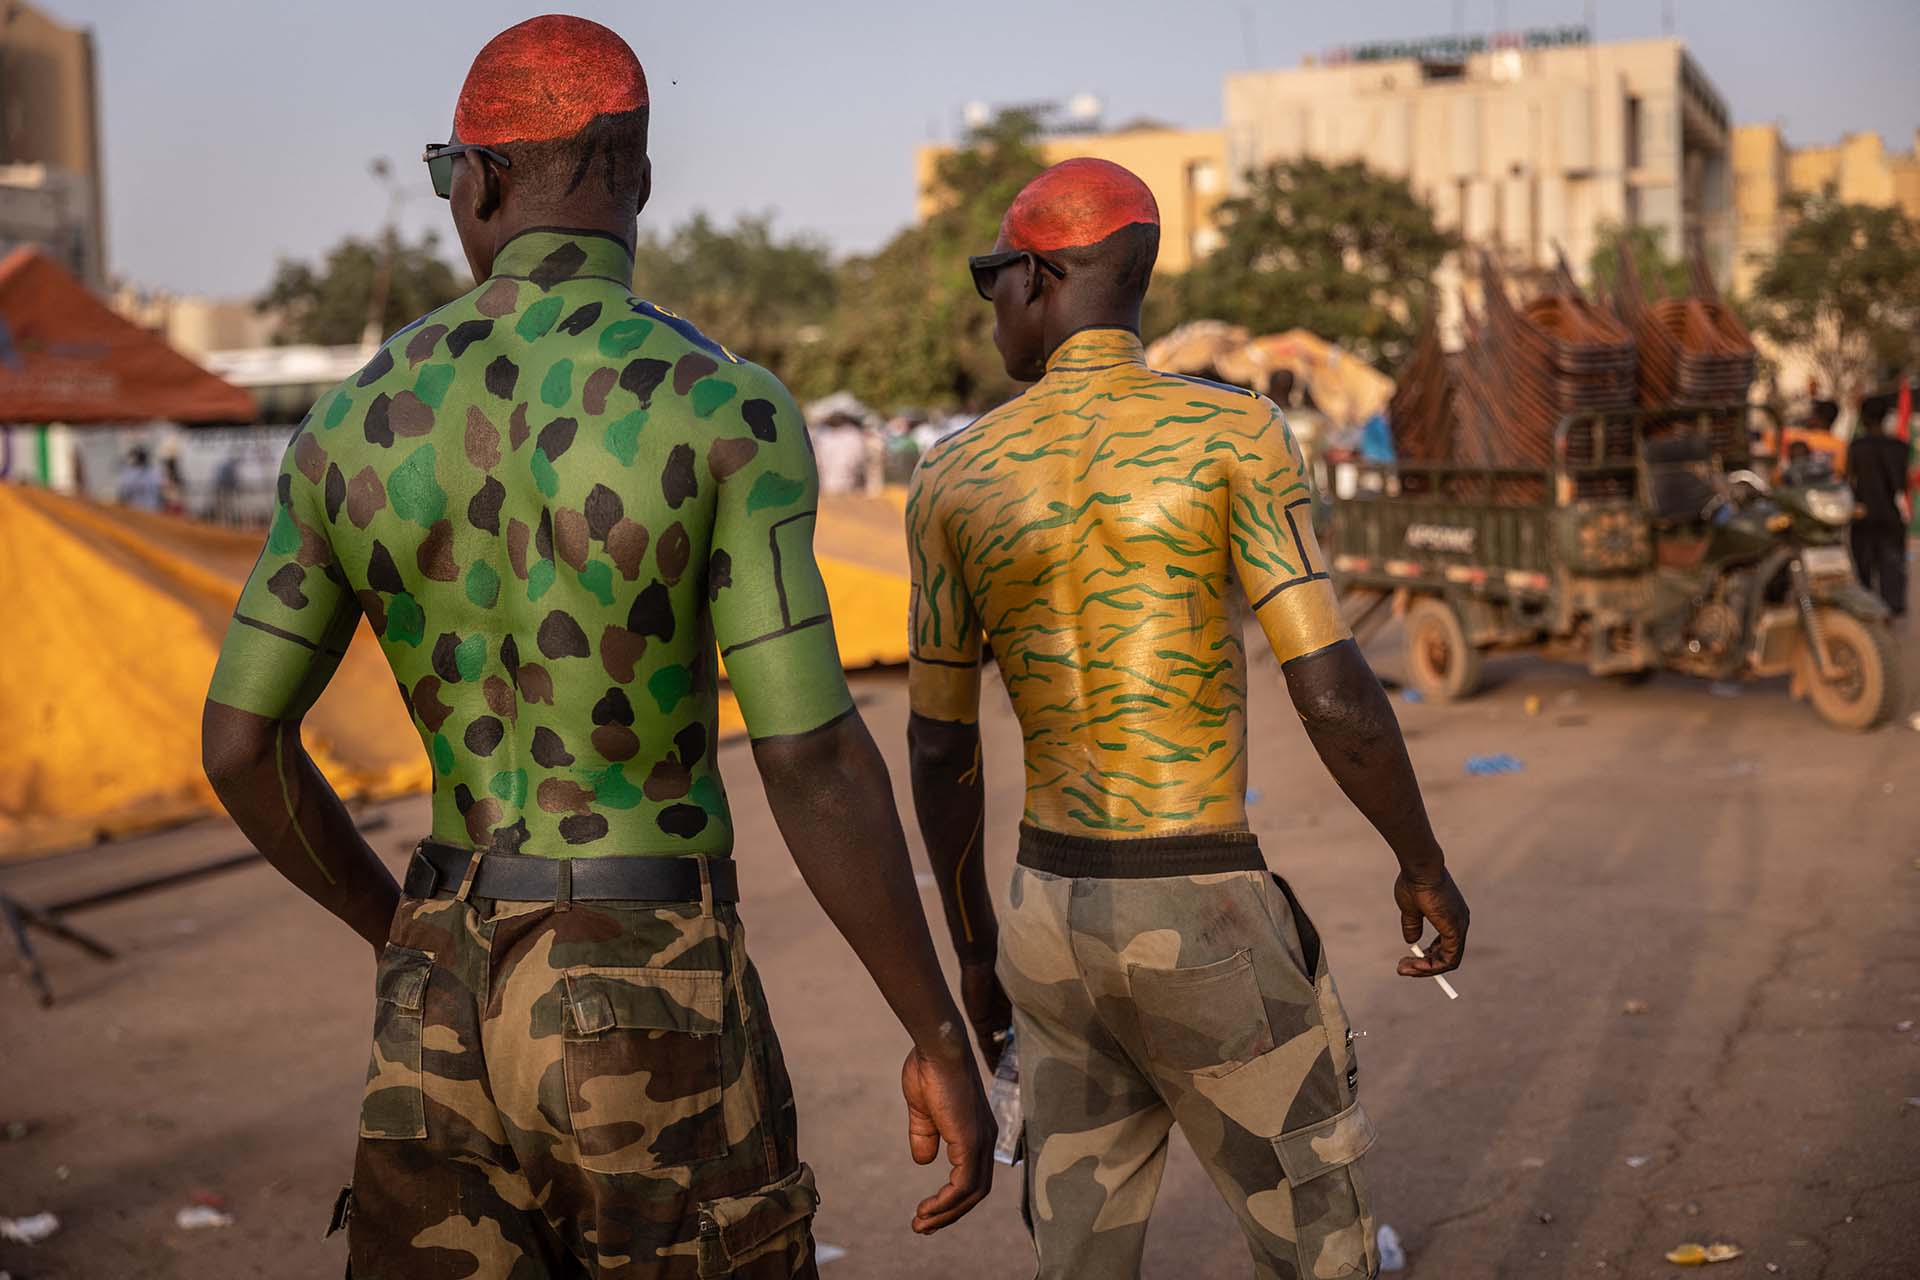 El presidente de Burkina Faso, Roch Kaboré, es detenido por militares durante un golpe de Estado. Dos hombres dan su apoyo al Ejército.